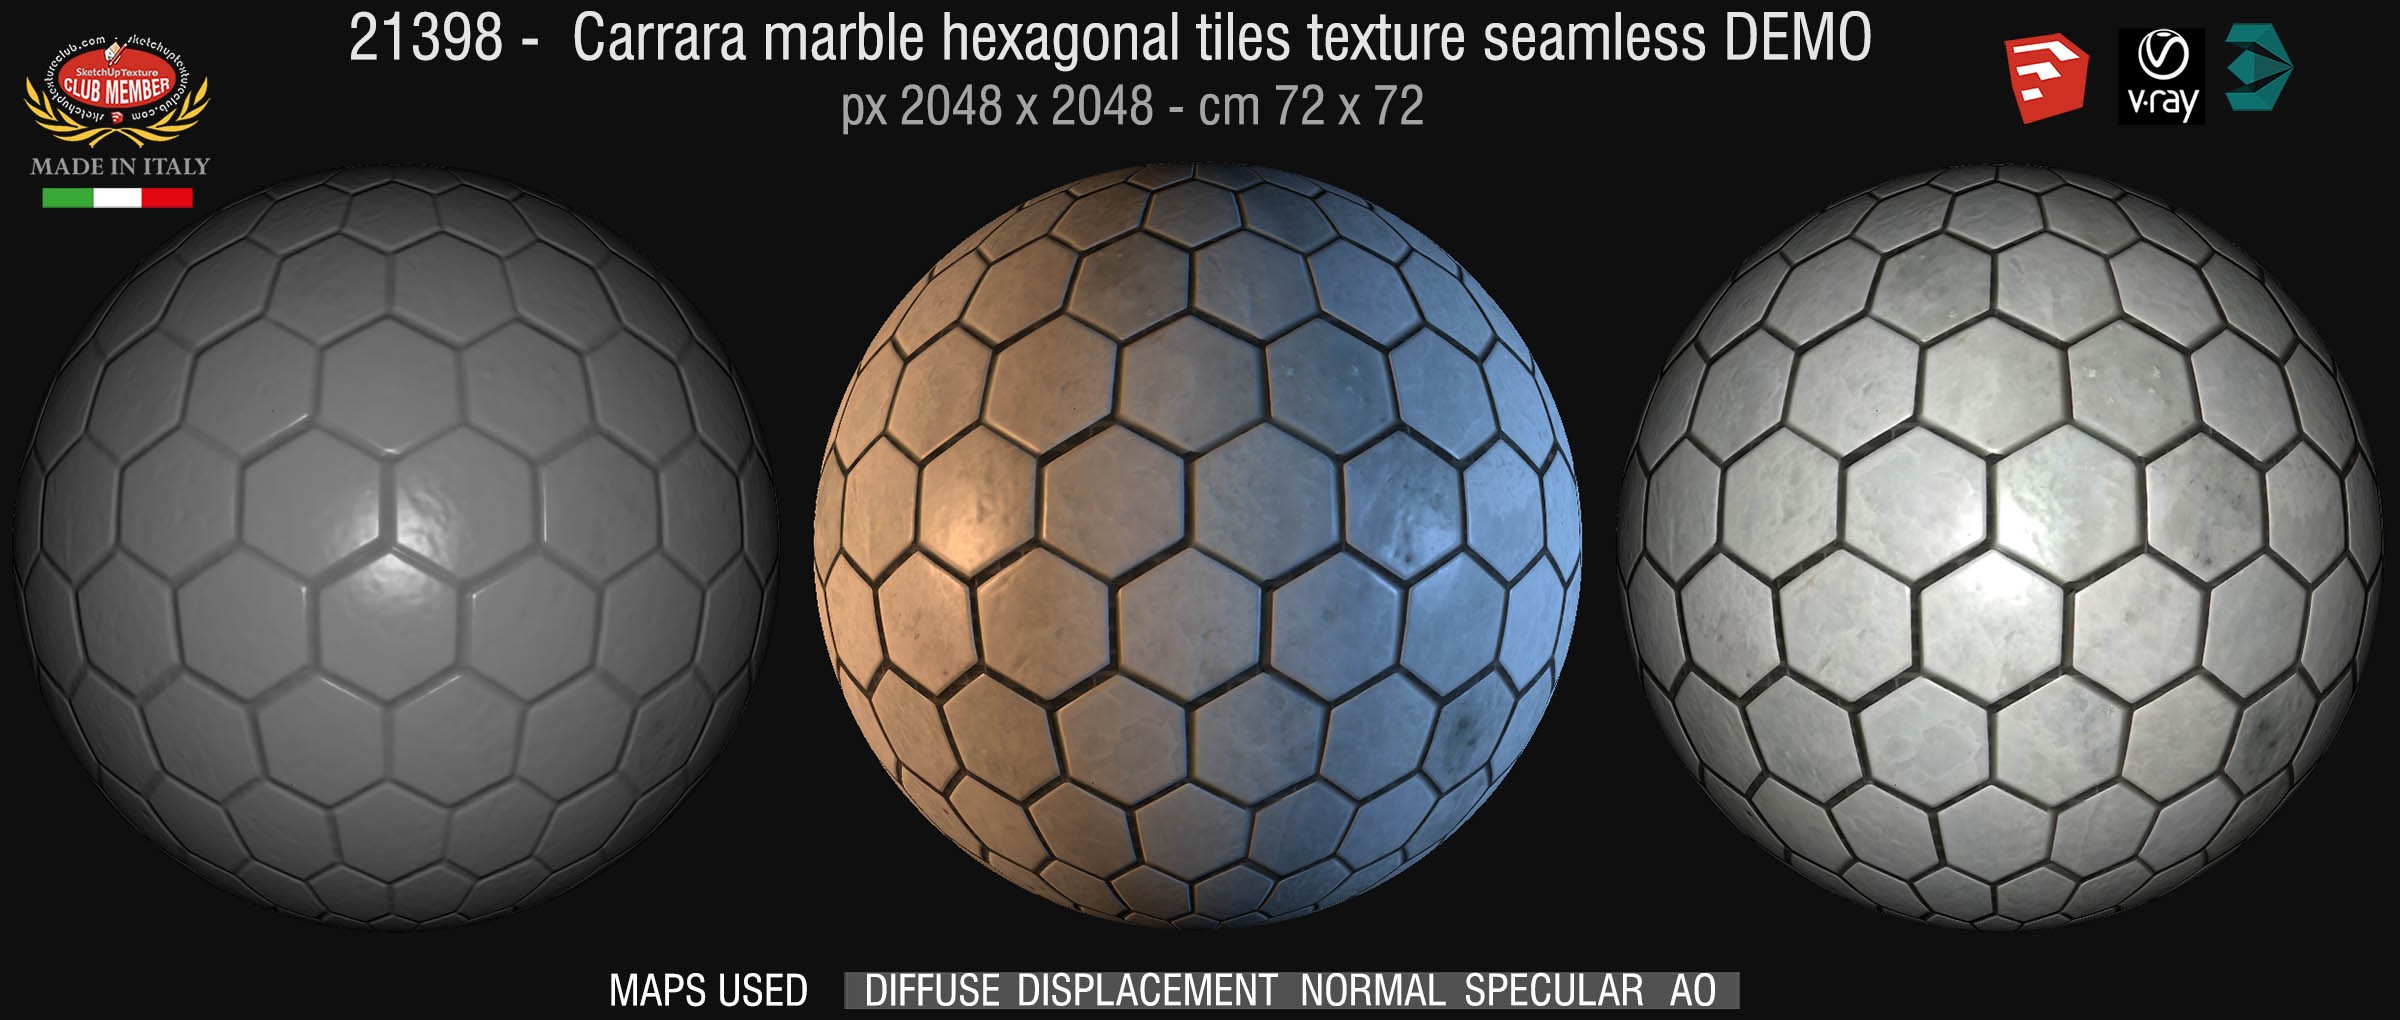 21398 carrara marble hexagonal tiles texture seamless + maps DEMO